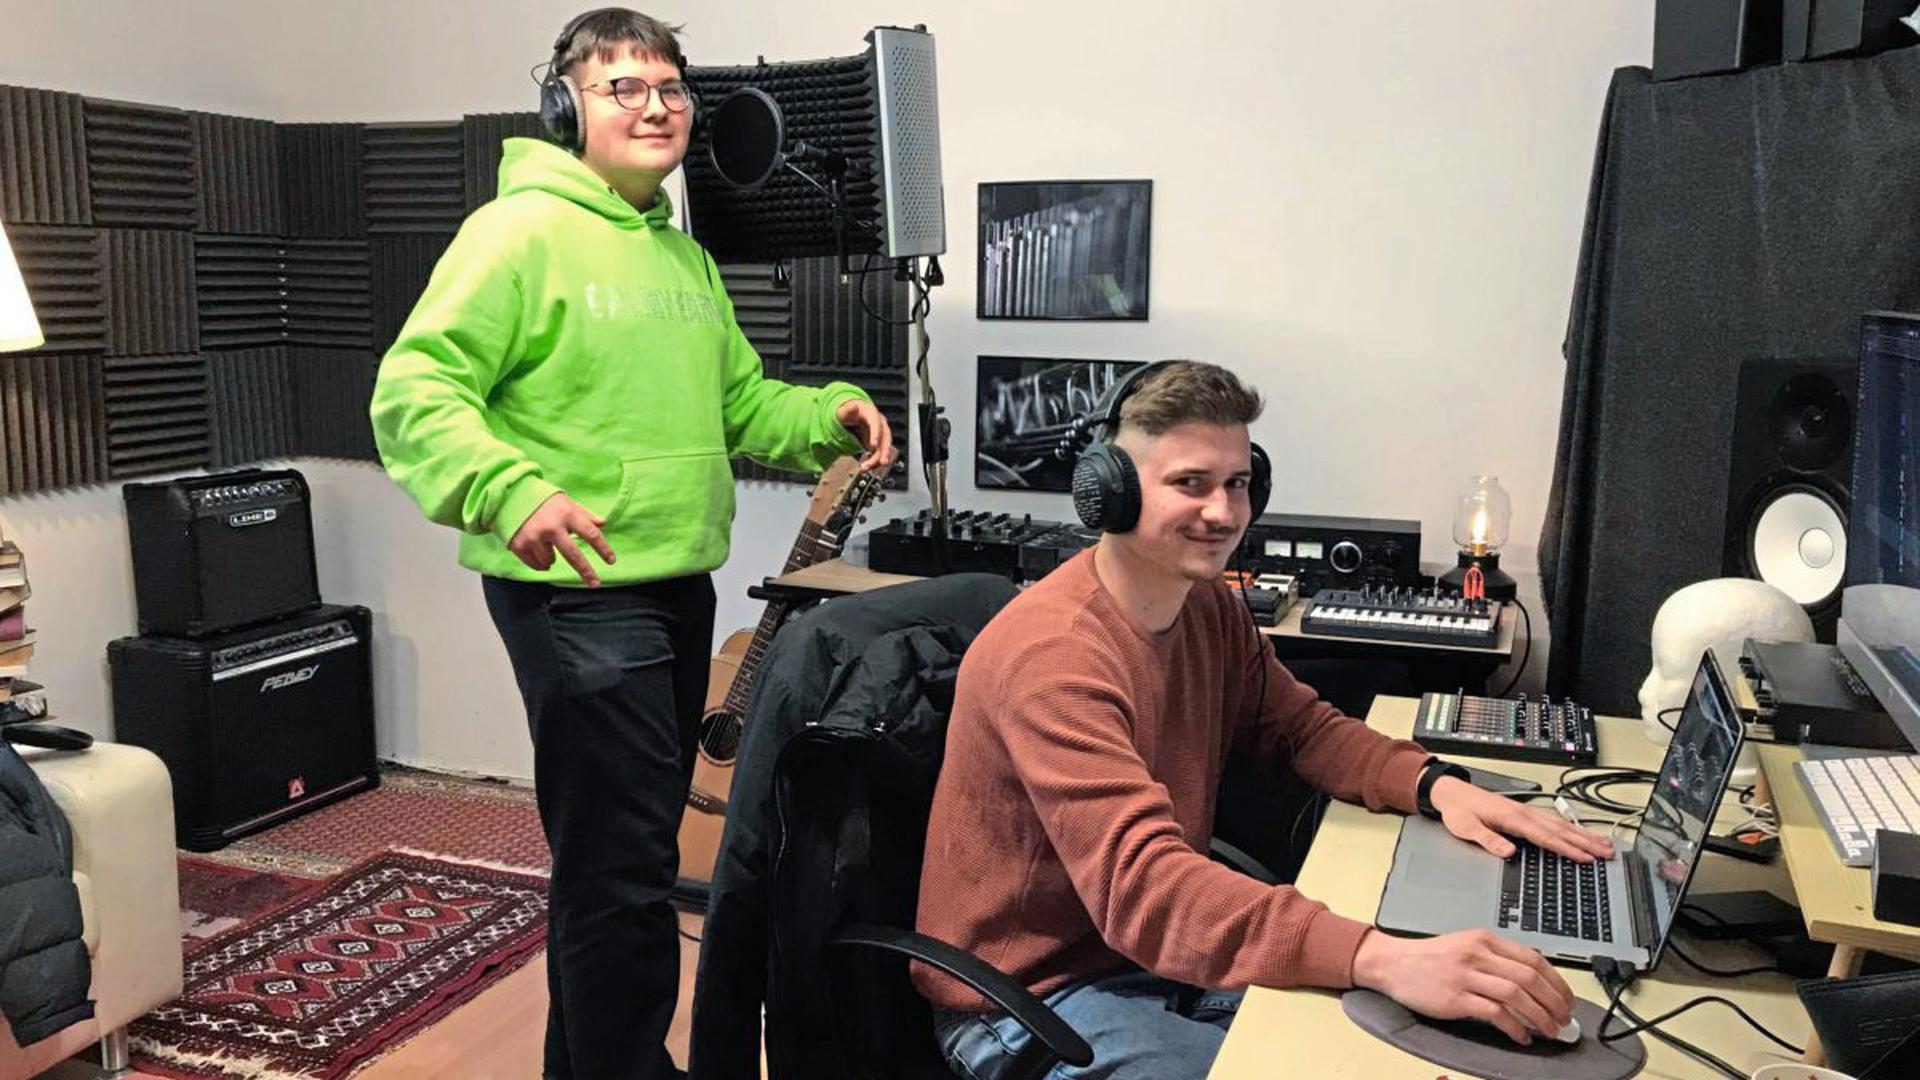 Der 15-jährige Fynn Baumann aus Graben-Neudorf (links) möchte als Rapper durchstarten. Gemeinsam mit seinem Freund Bastian Eberhard (rechts) arbeitet er an seinem ersten Album.